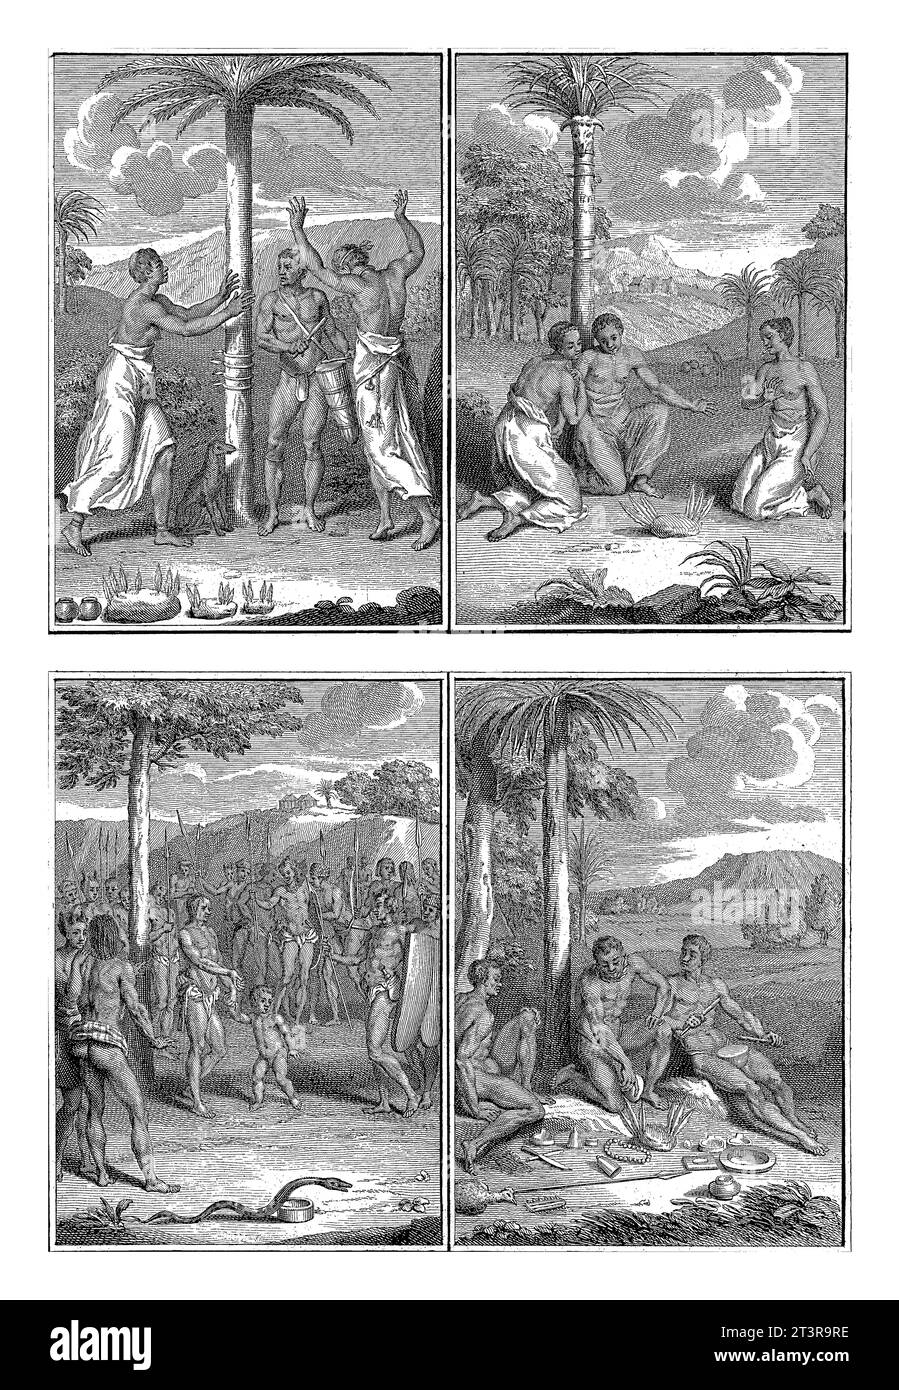 Rituale von Bewohnern von Guinea, Bernard Picart (Werkstatt von), 1726 Magazin mit vier Darstellungen von Ritualen von Bewohnern von Guinea. Stockfoto